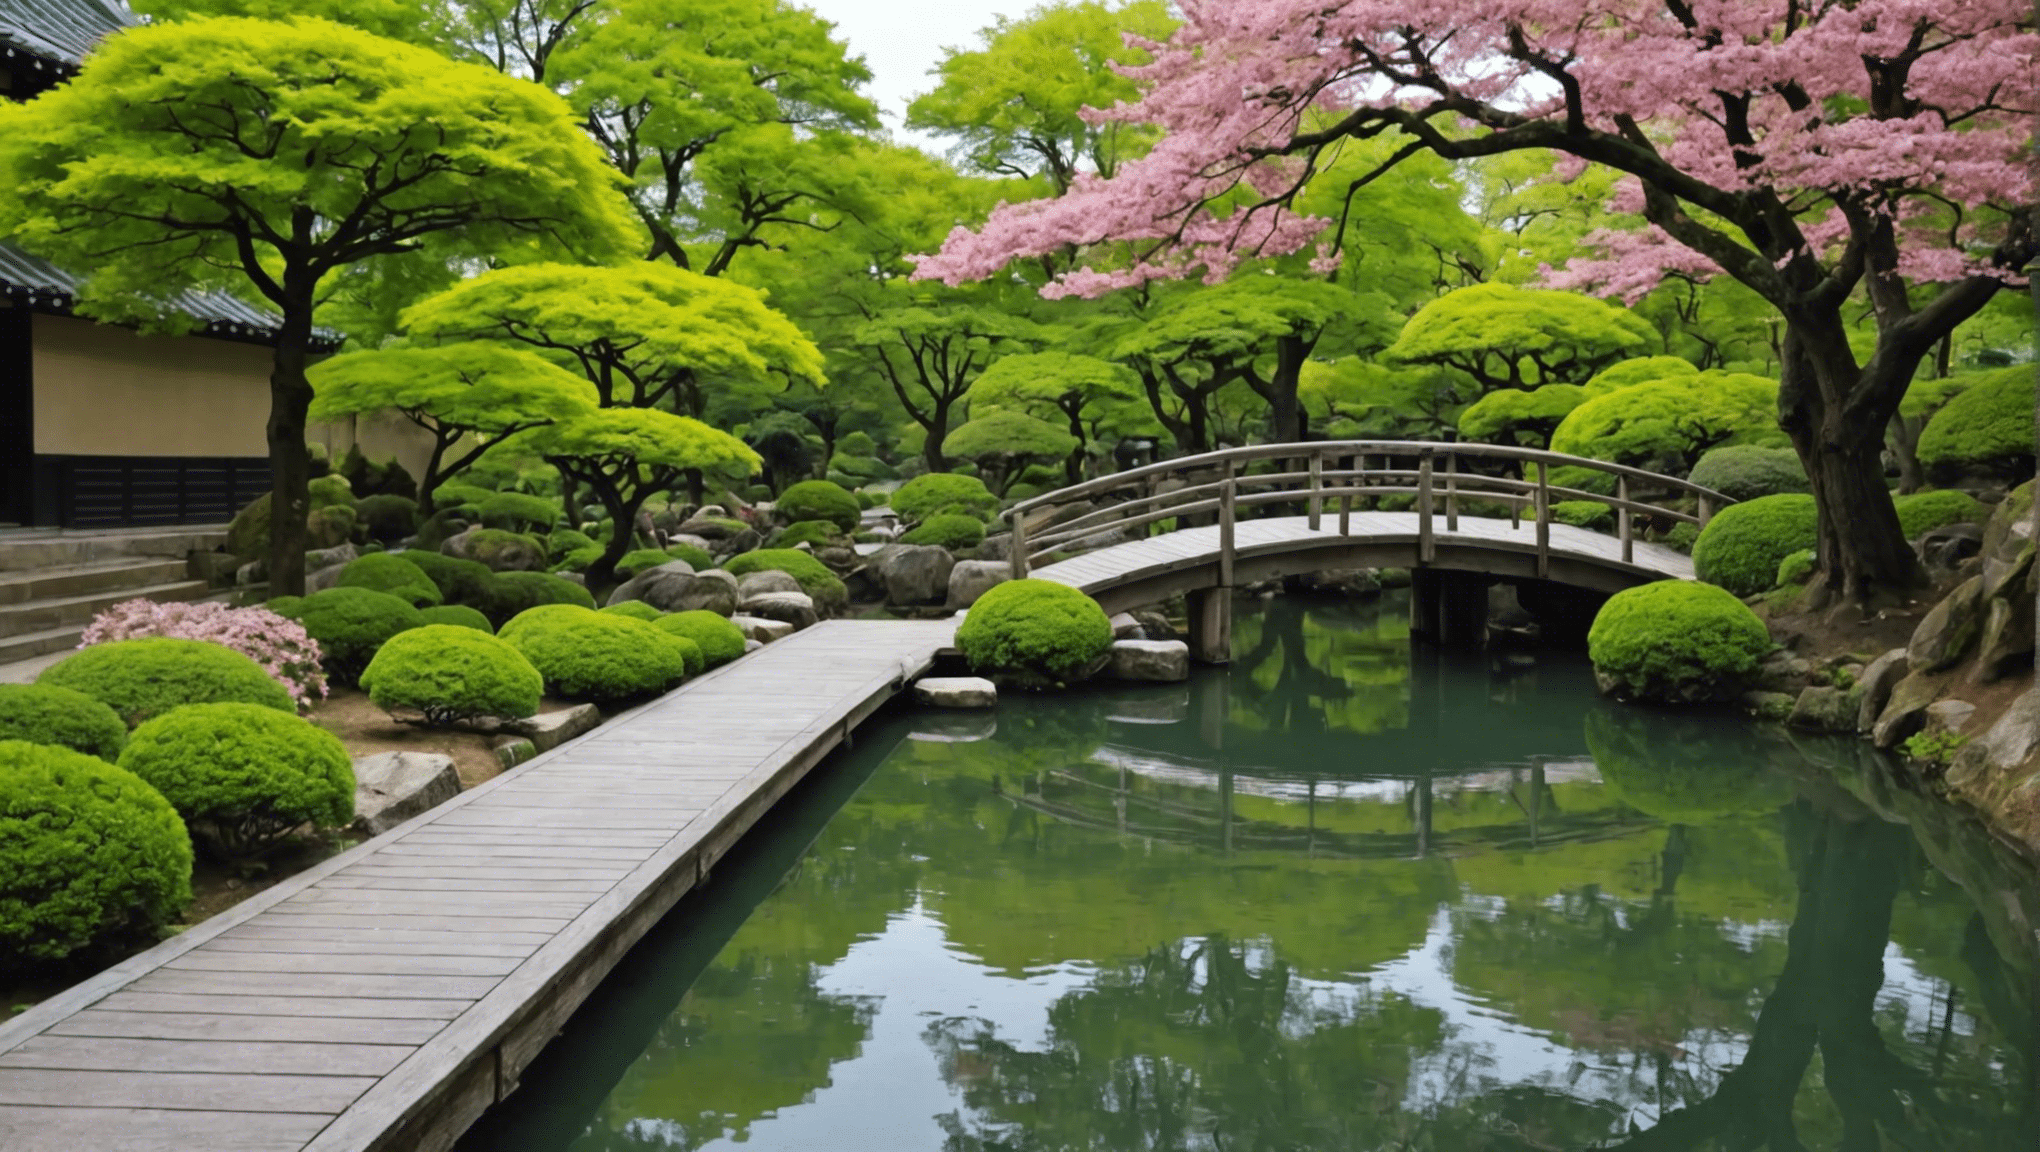 découvrez le magnifique jardin japonais de paris et plongez dans un oasis de sérénité et de beauté inspirée par la culture japonaise. réservez votre visite dès maintenant !